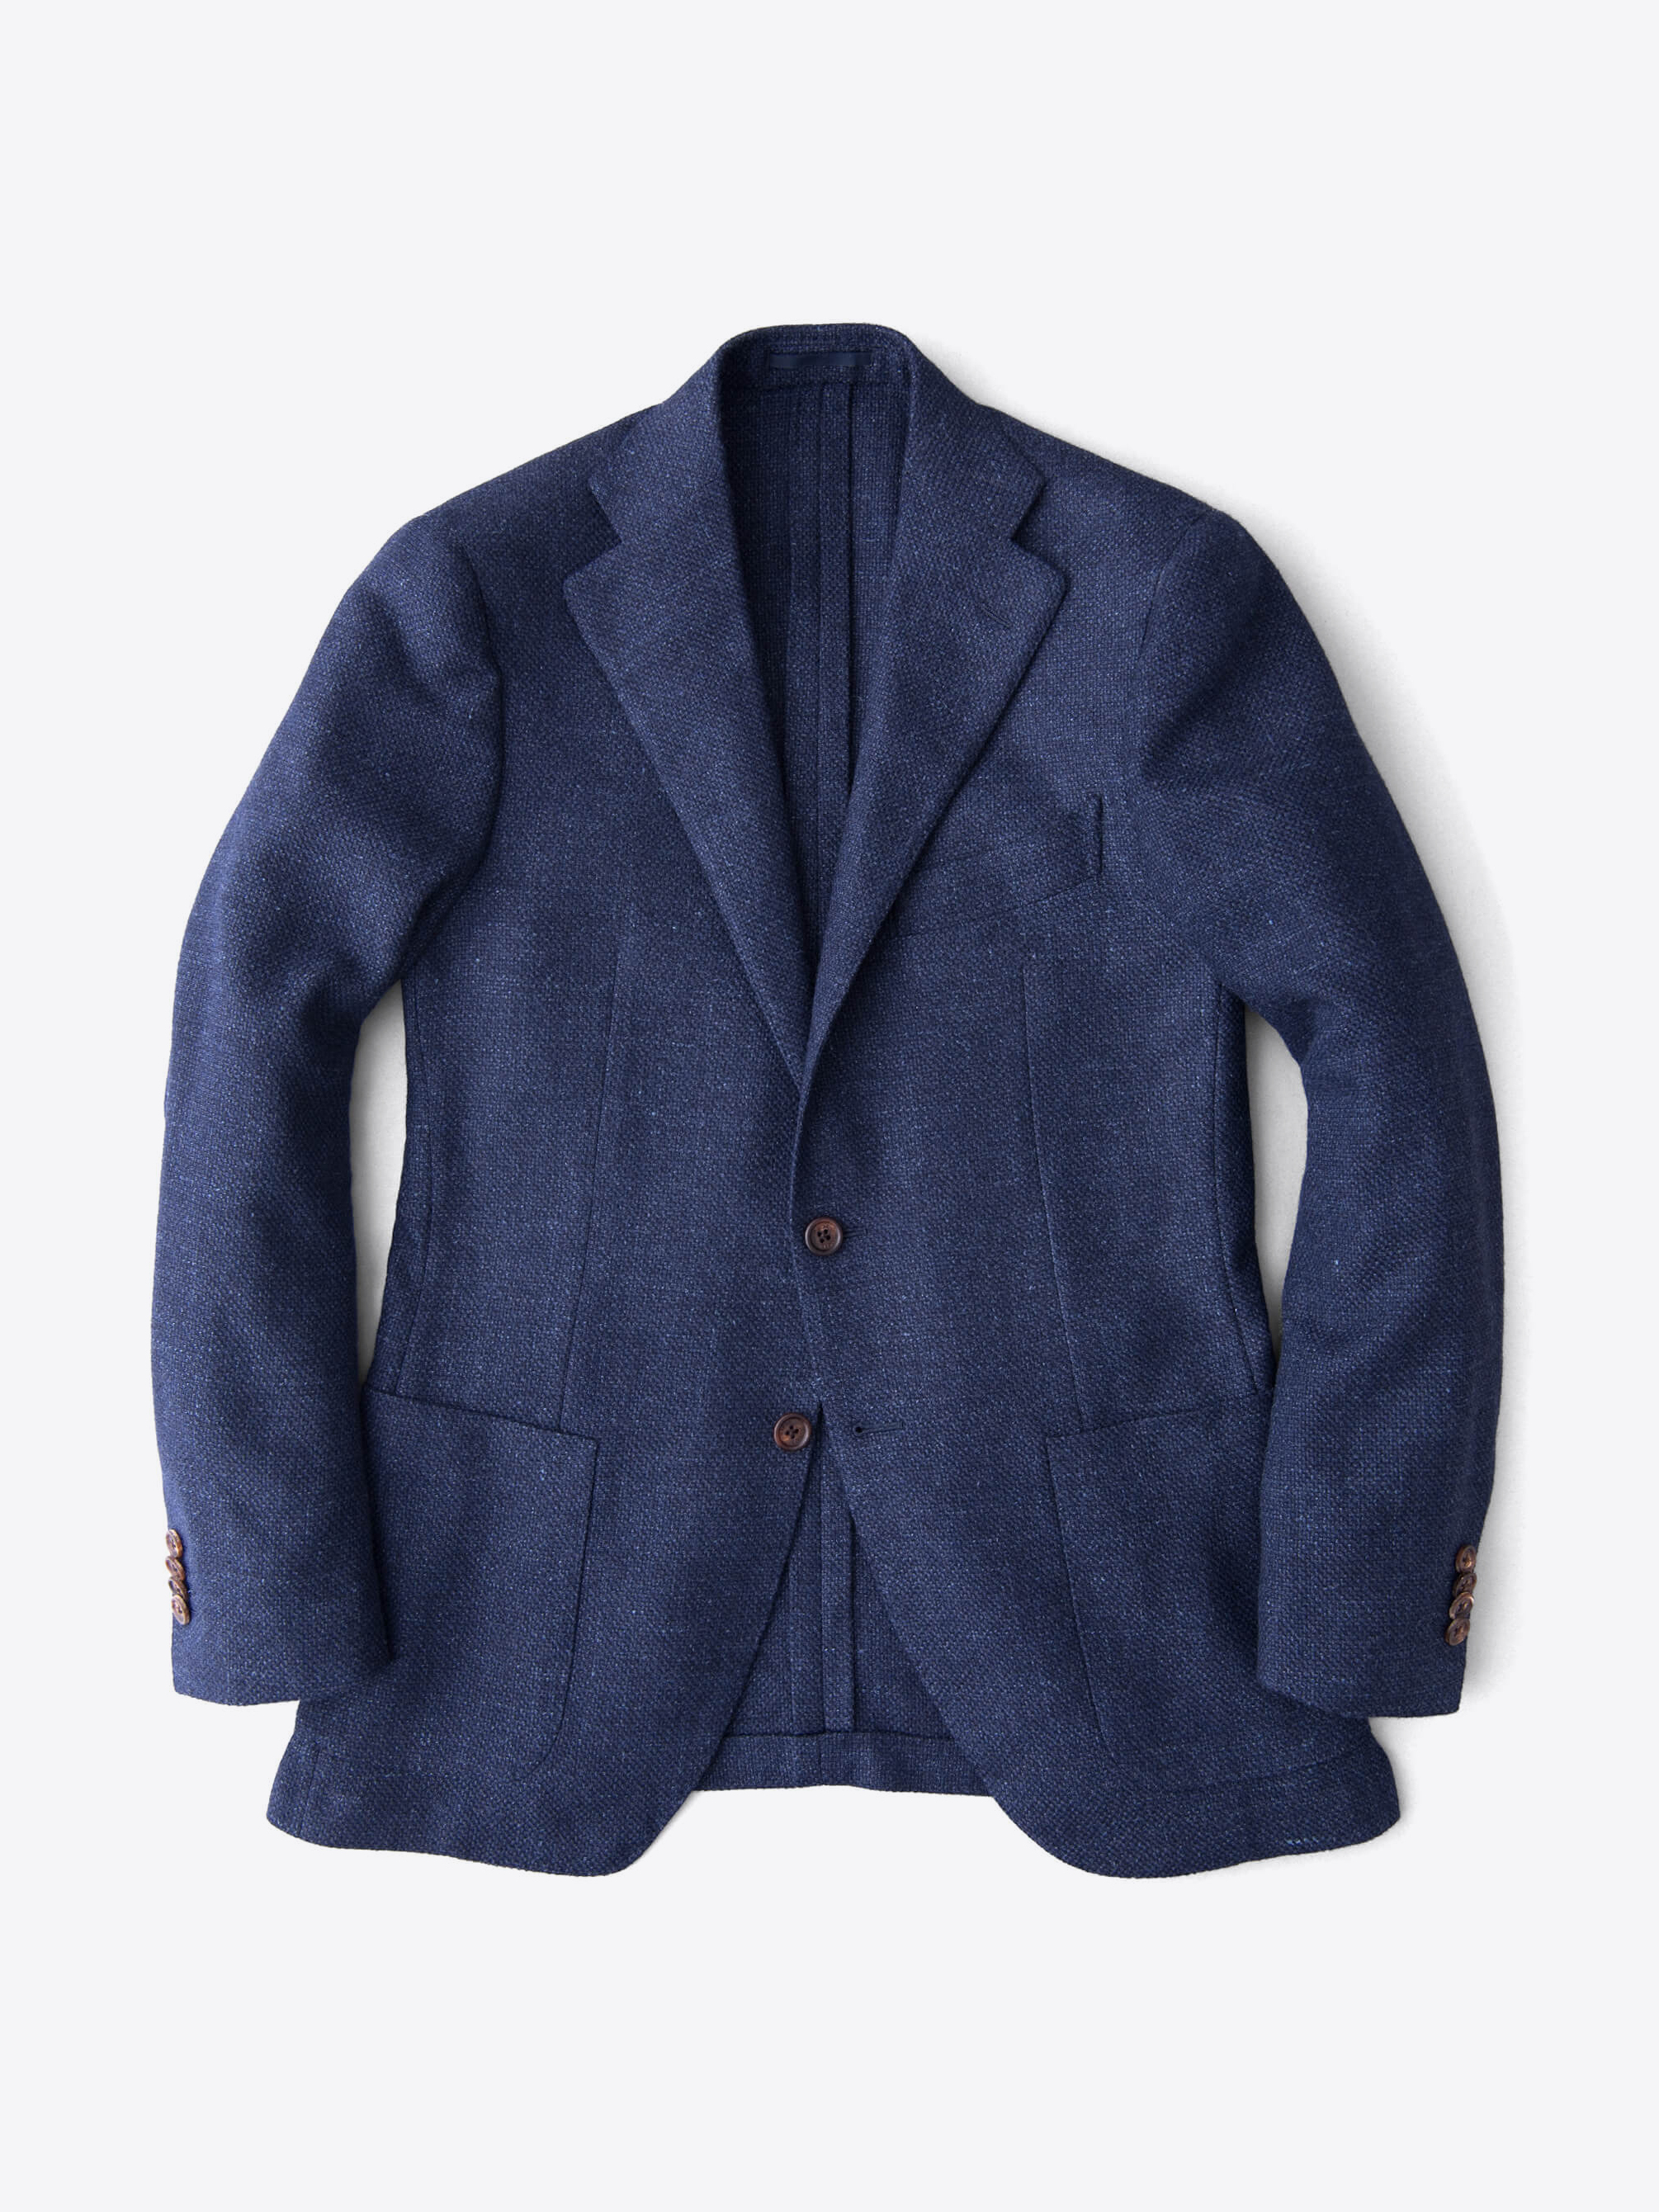 Zoom Image of Hudson Navy Basketweave Wool Flannel Jacket